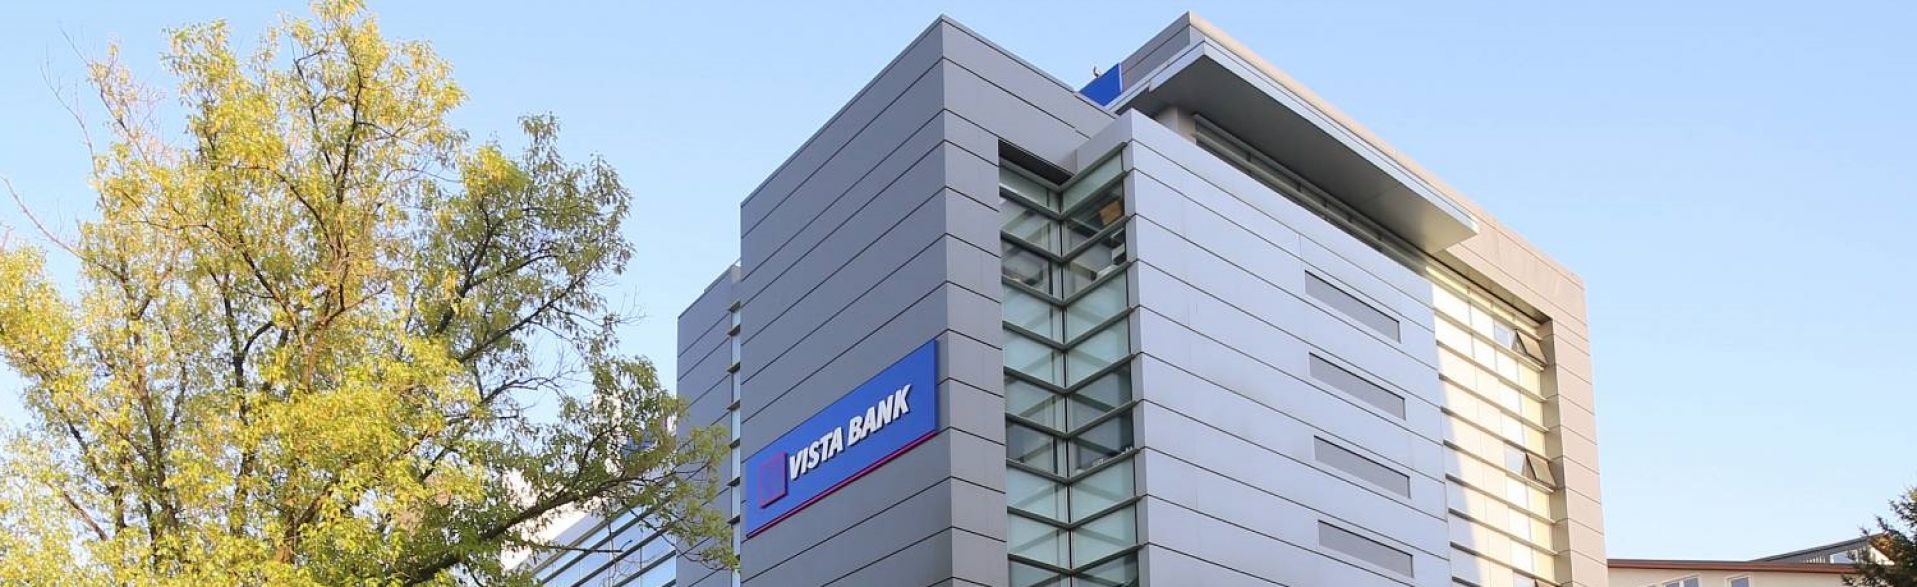 Vista Bank lansează creditele imobiliare pentru locuințe verzi